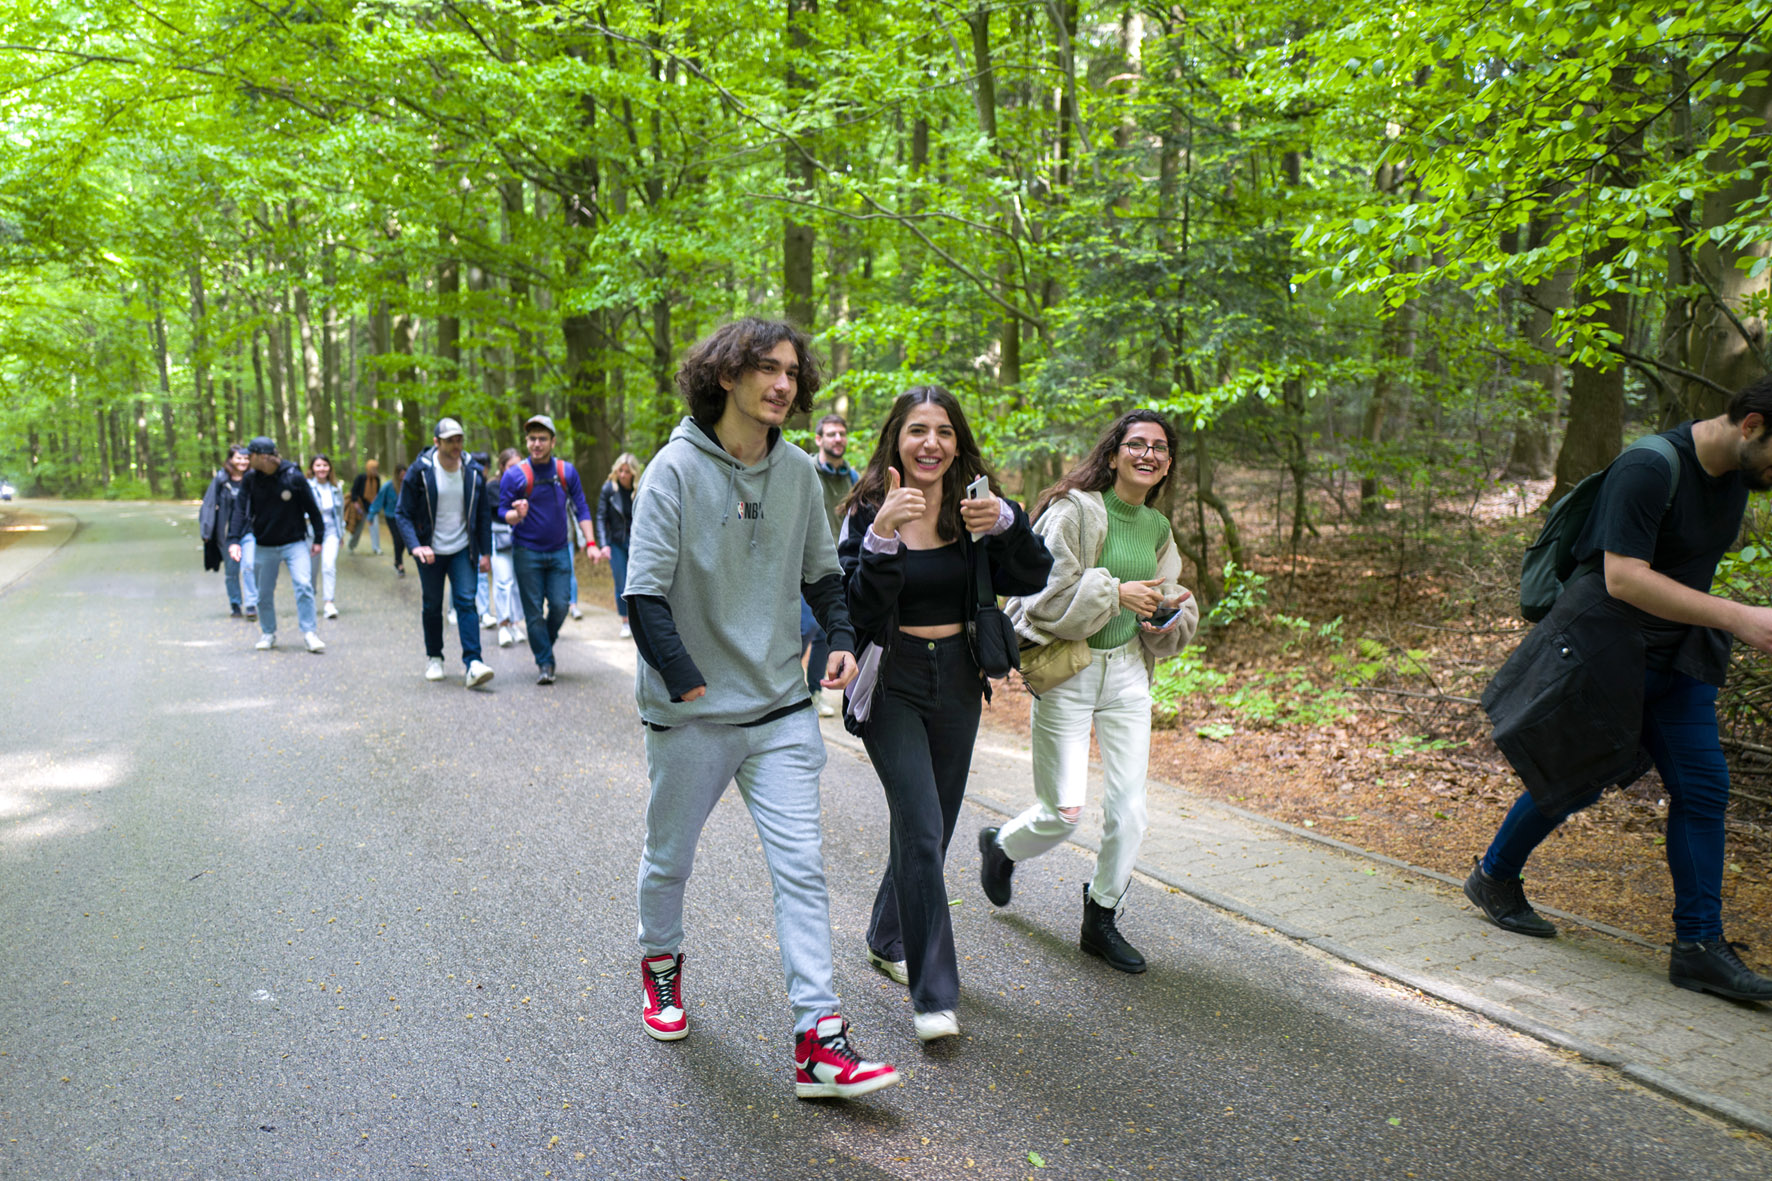 Uśmiechnięci studenci idą przez park. W tle drzewa.